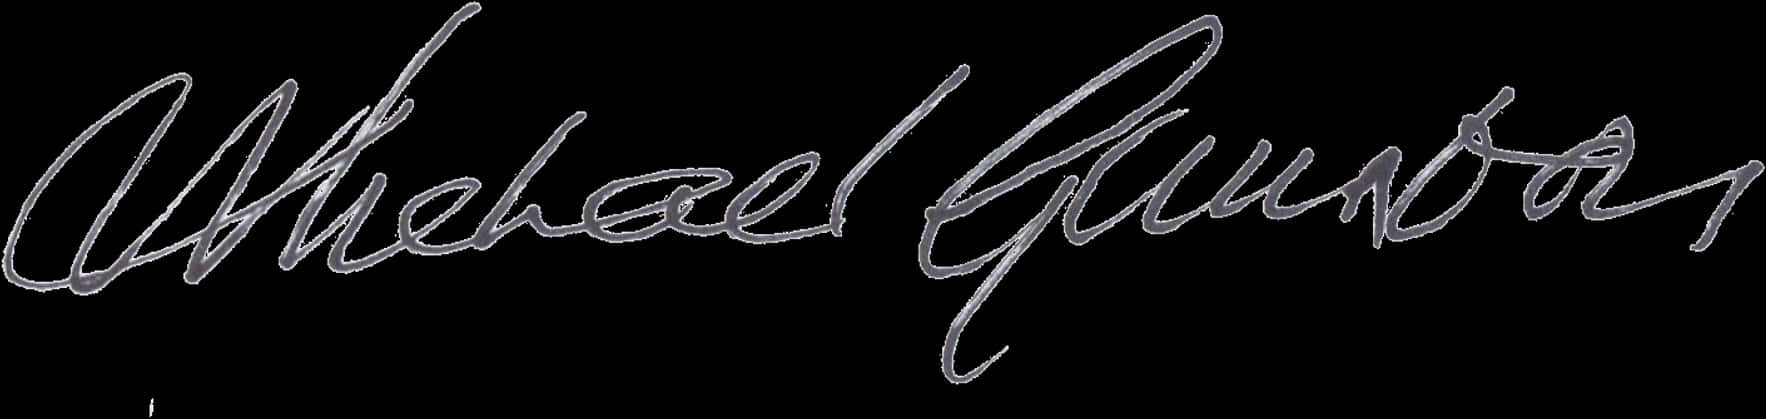 Michael Jordan Signature PNG image